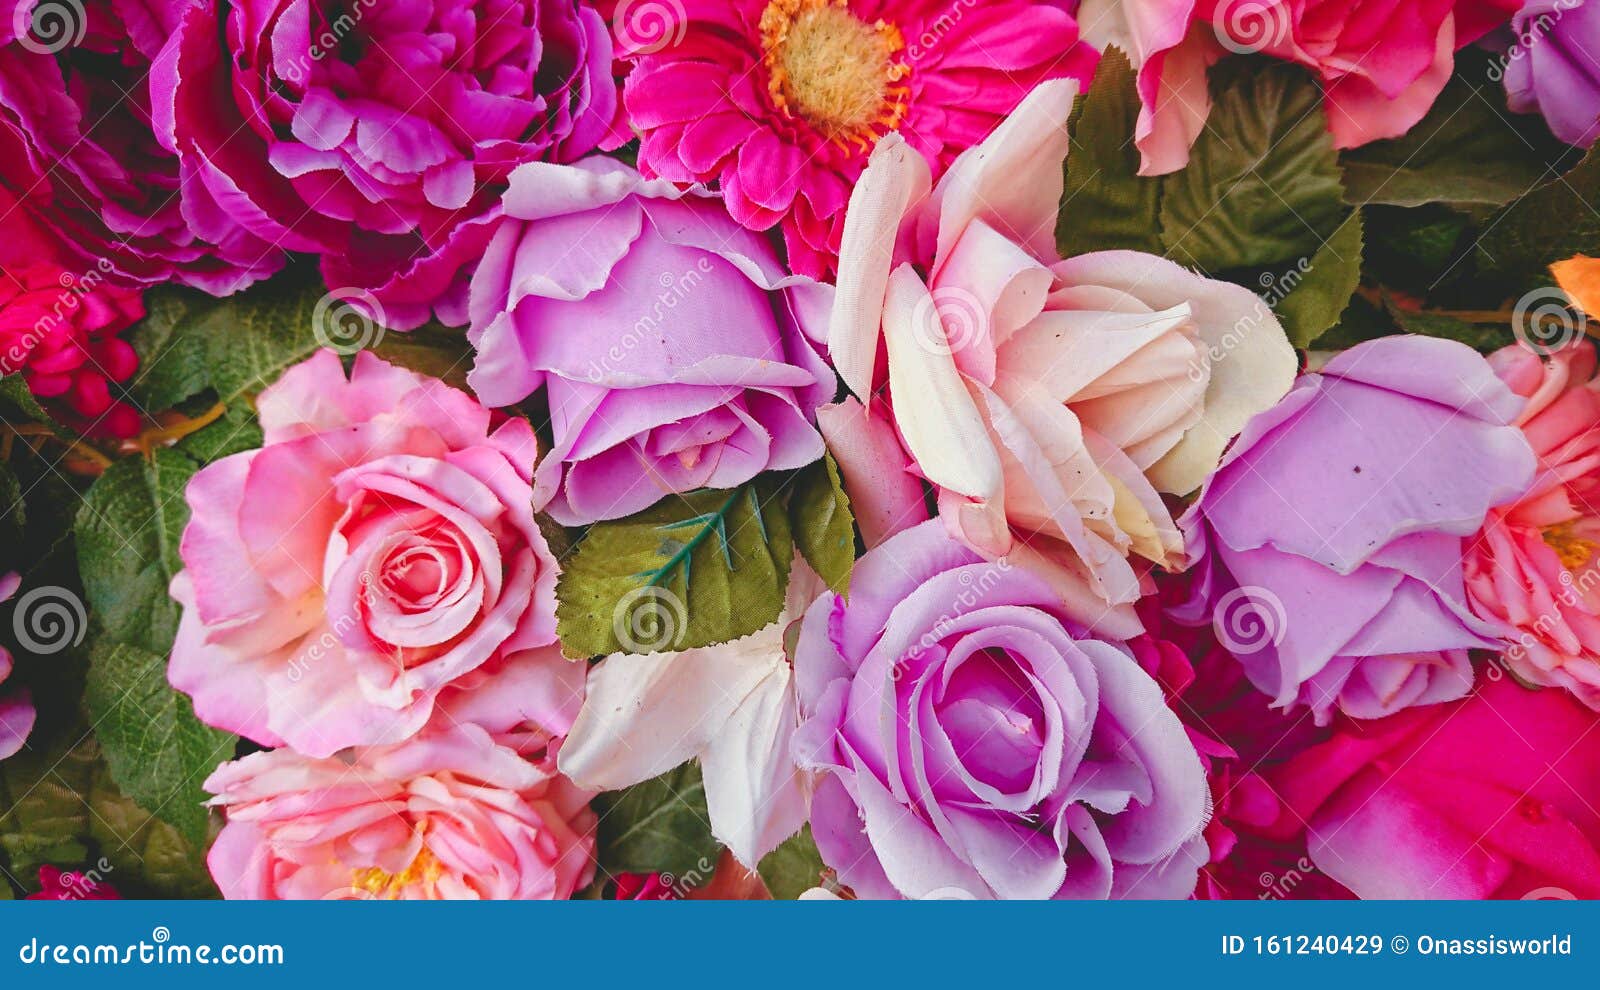 Không có gì tuyệt đẹp bằng những bông hoa nhiều màu sắc. Những mảng màu sáng tạo nên một cảnh quan hoa hồng phấn tuyệt đẹp. Hãy xem hình ảnh liên quan để tan hưởng sắc màu đầy sức sống của những bông hoa nhiều màu sắc.